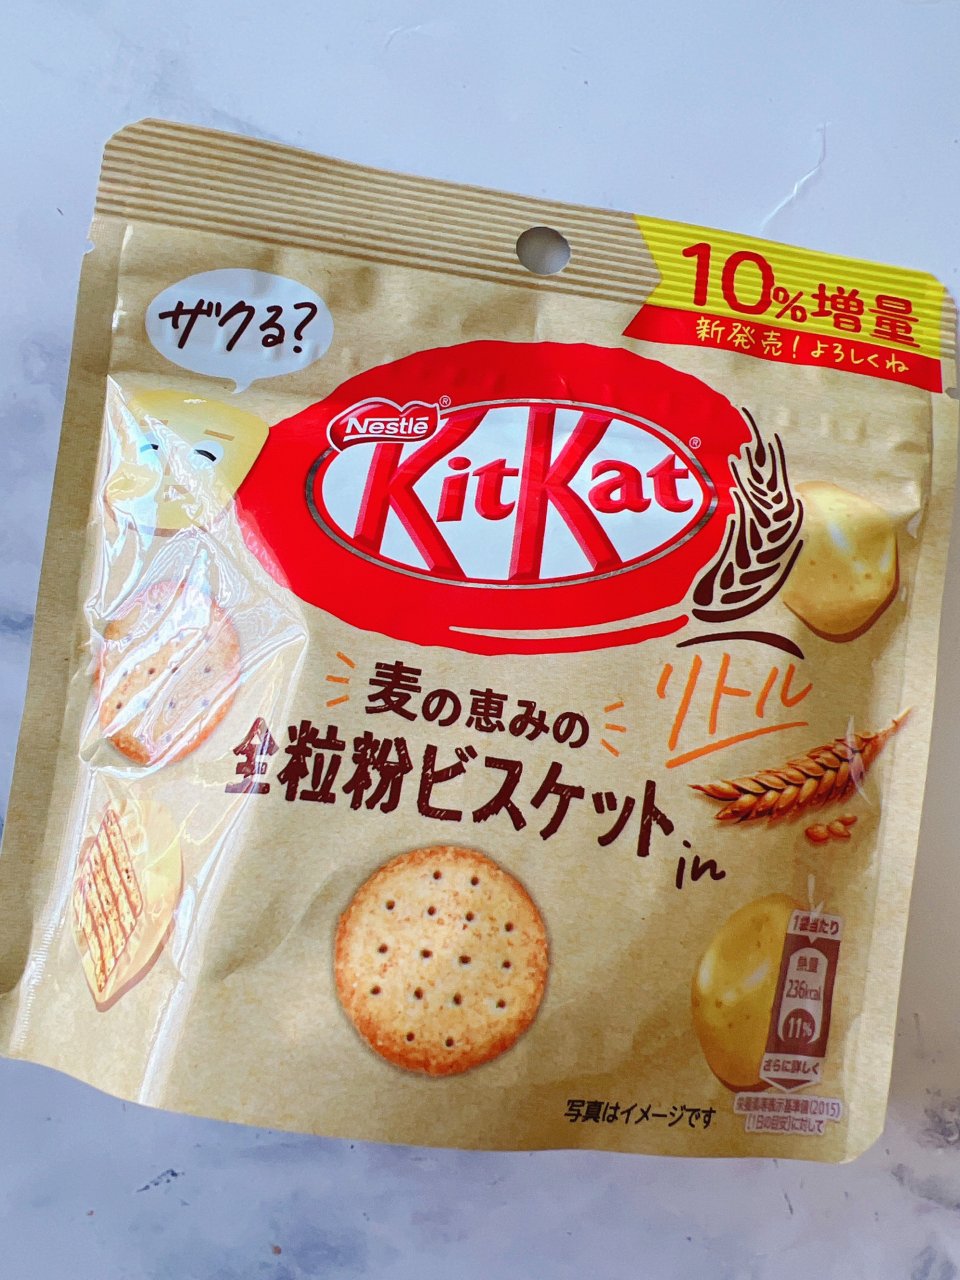 Kitkat 迷你 全麦饼干威化巧克力...